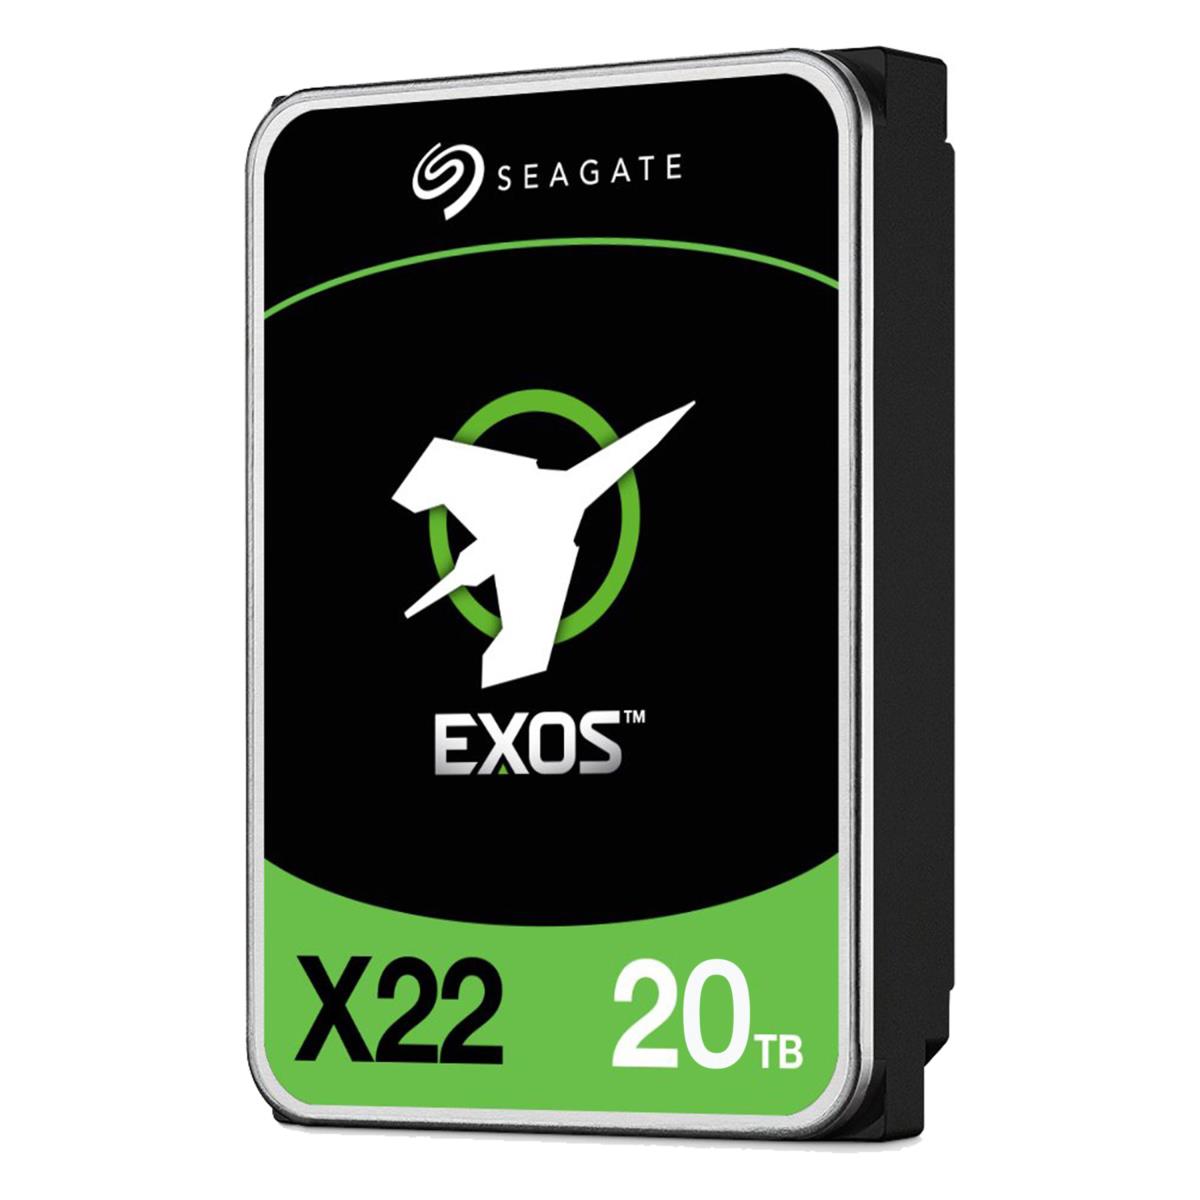 Seagate EXOS X22 Enterprise Hard Drive